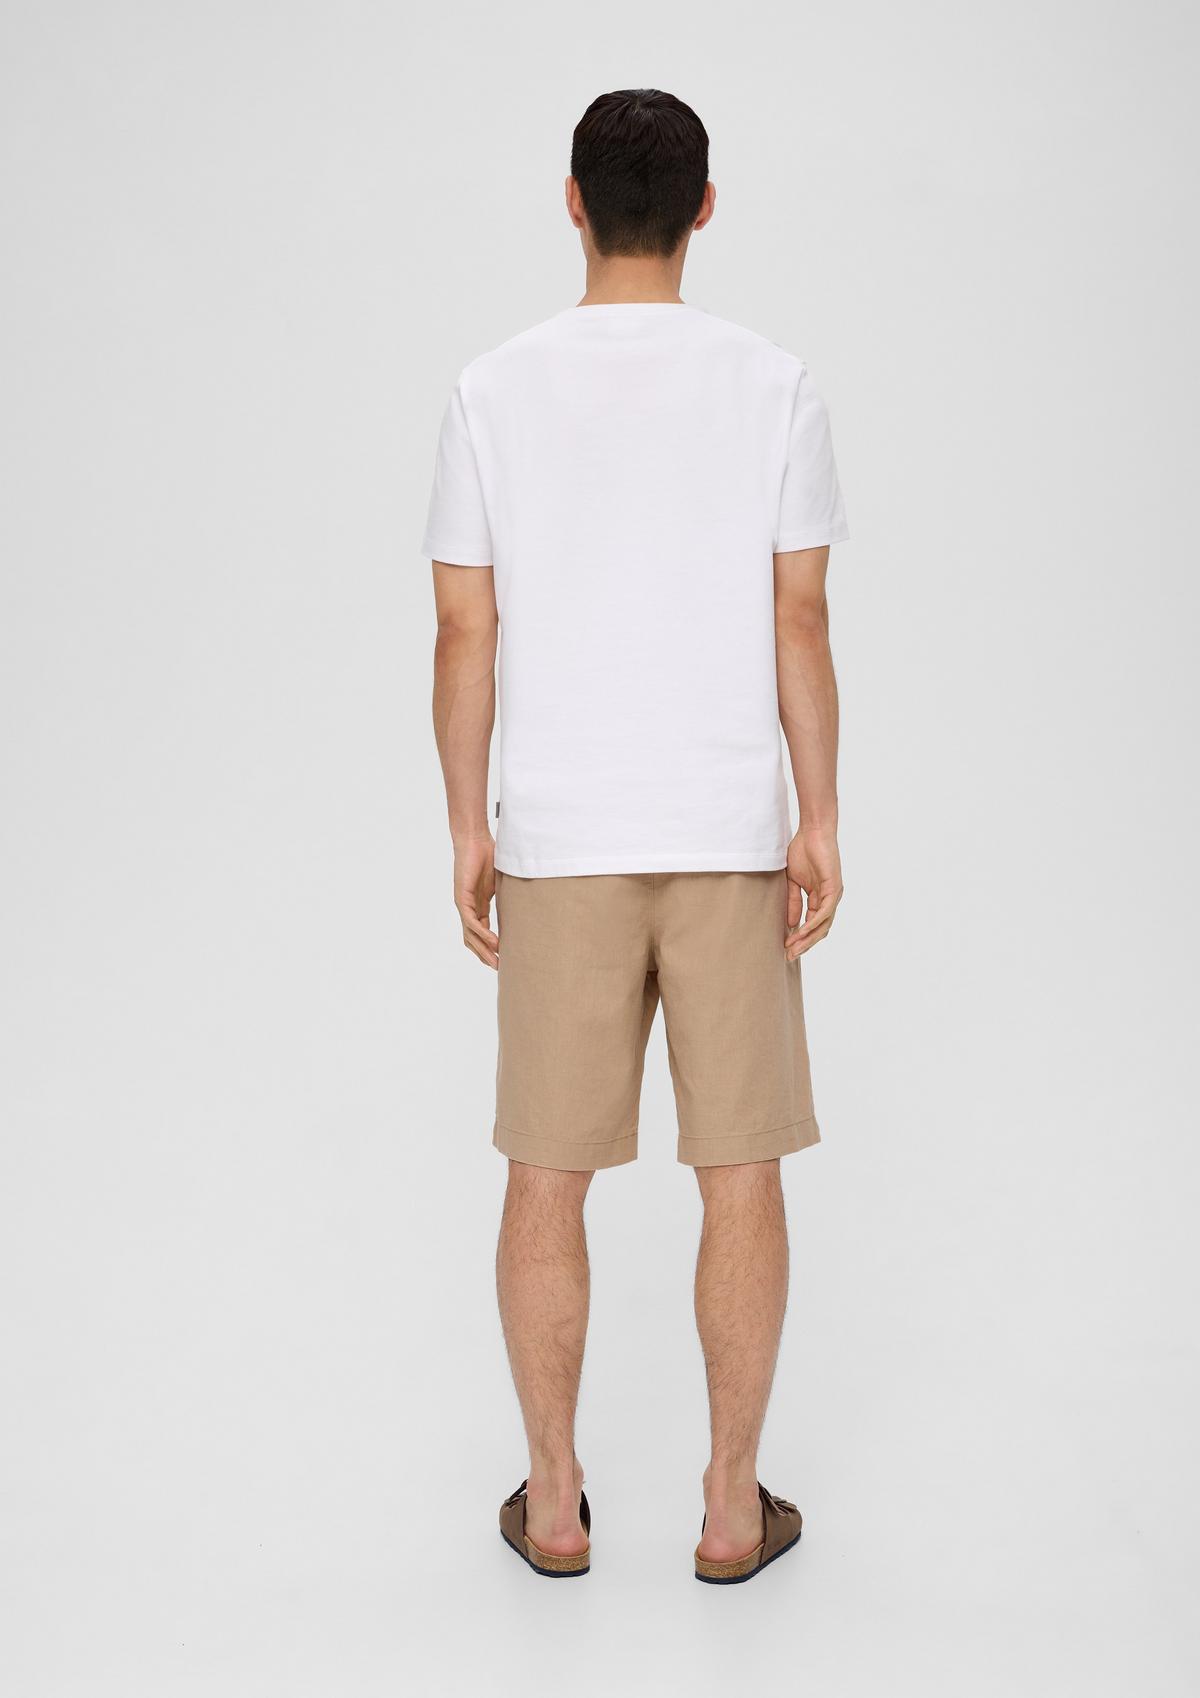 Bermuda shorts in blended white linen 